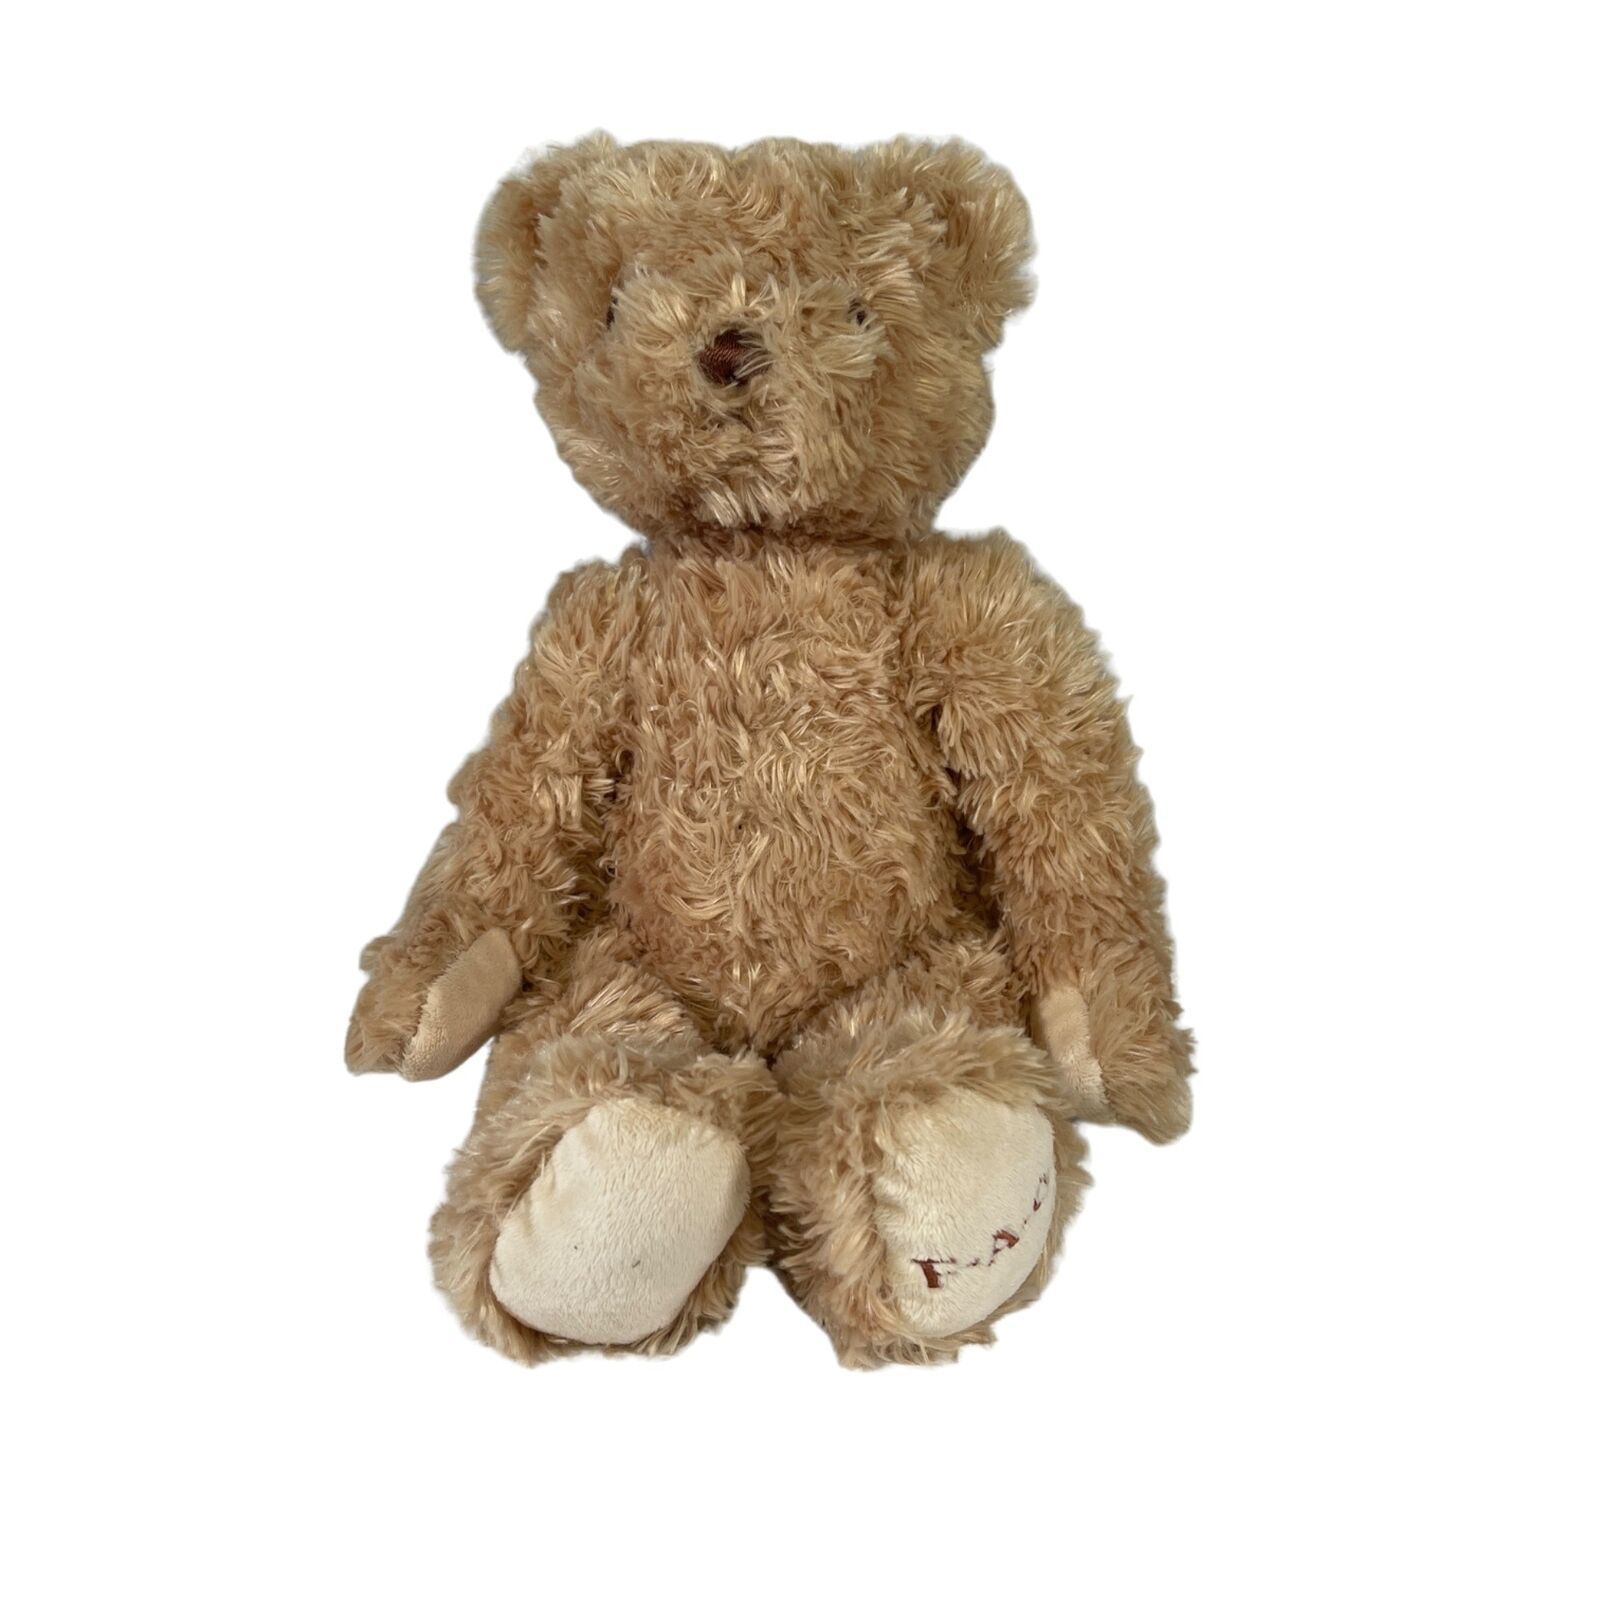 FAO Schwarz Tan Fuzzy Teddy Bear 12" Sitting - $10.39